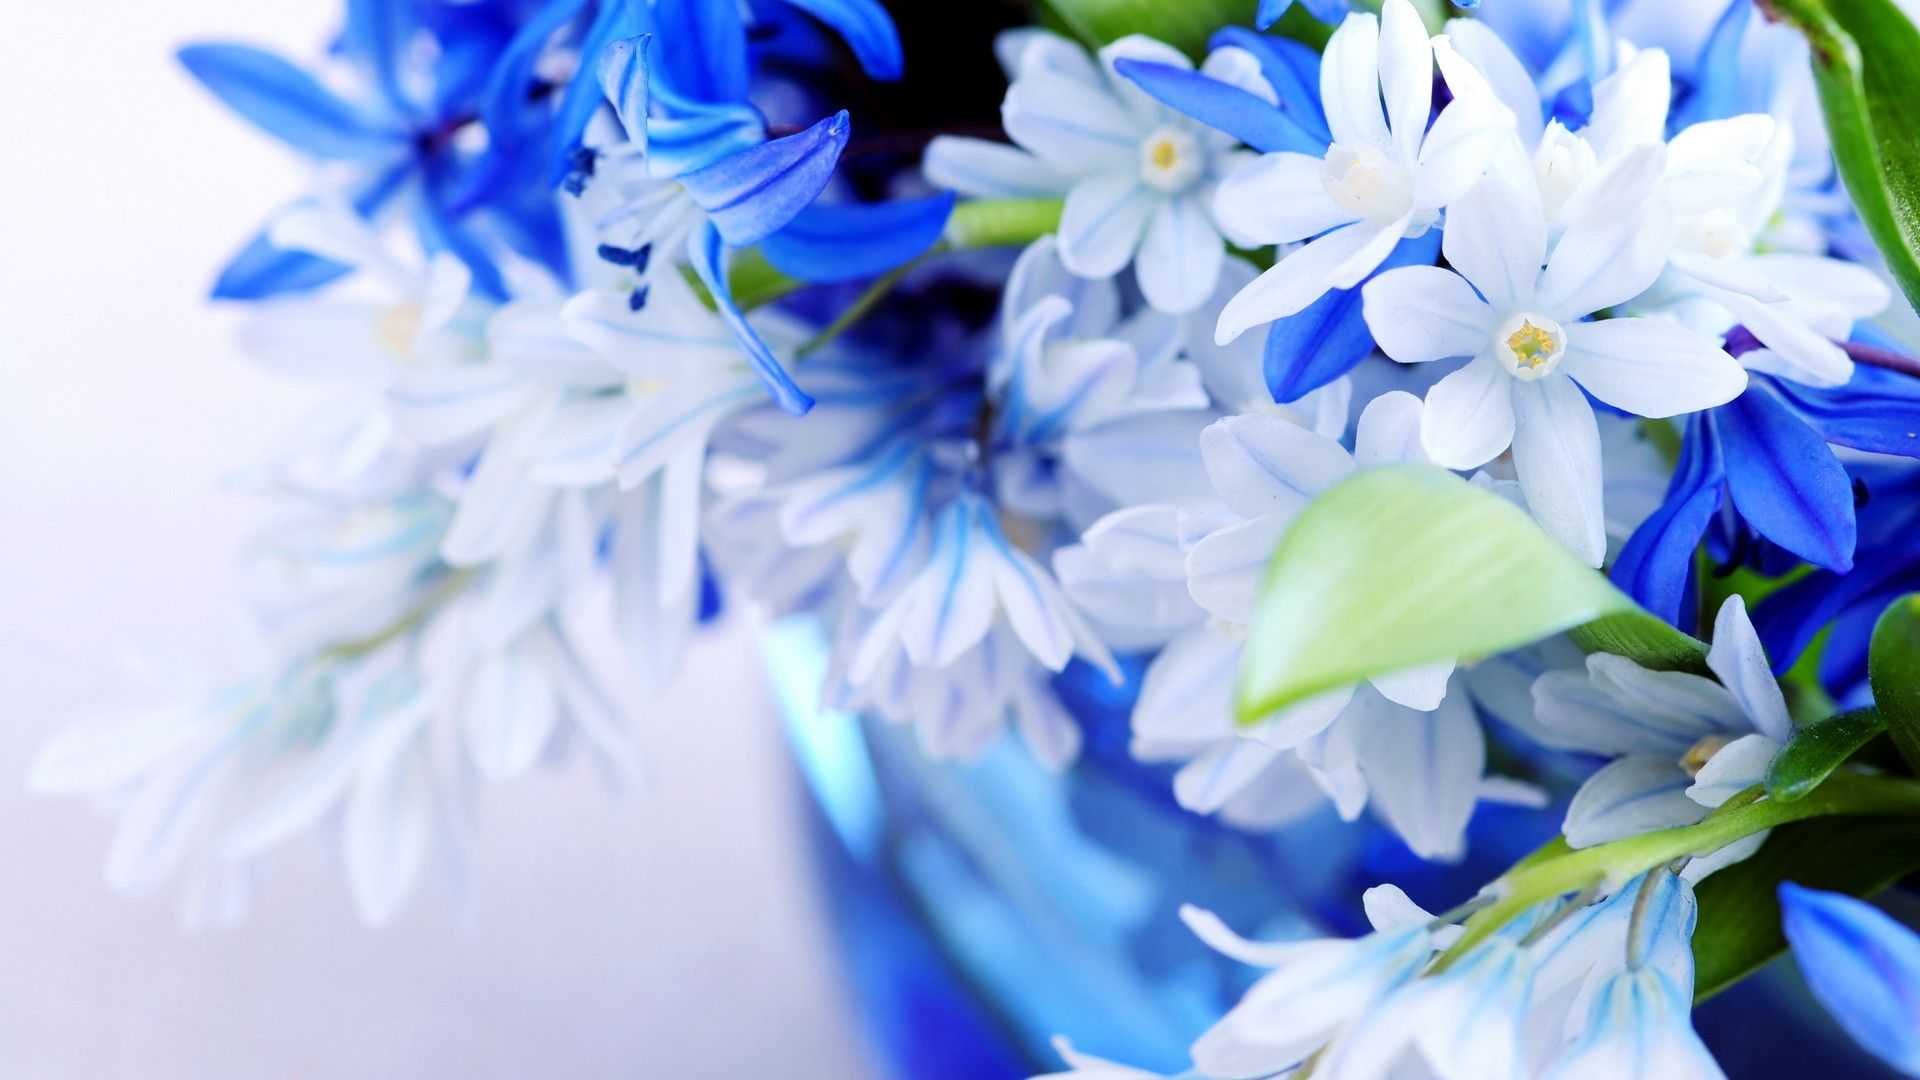 Flower Wallpaper Desktop Full Size HD New For iPhone Elegant Pixels